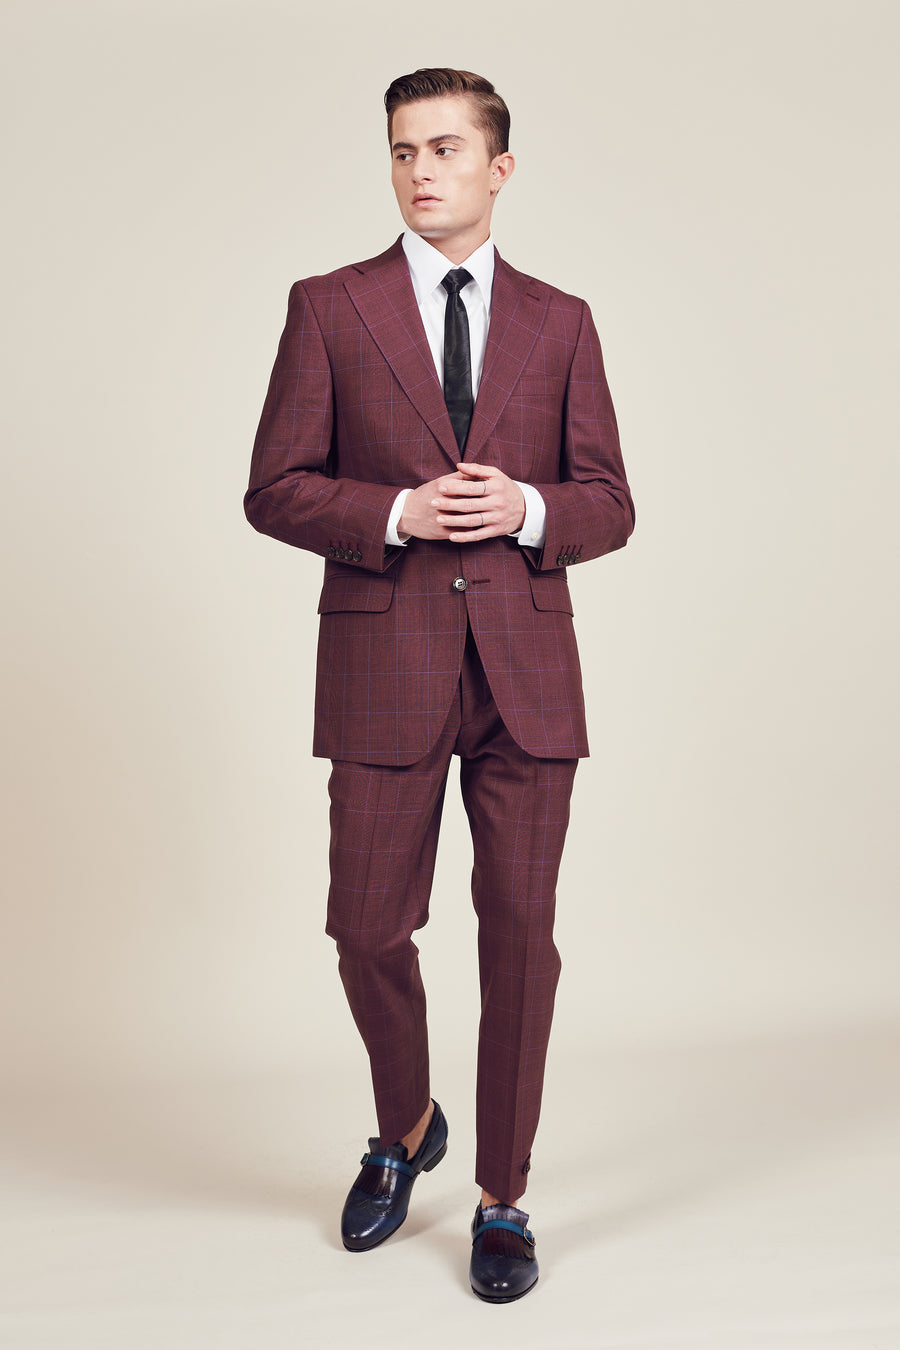 Men's City Suits | Tailored Men's British Suits | Cordings